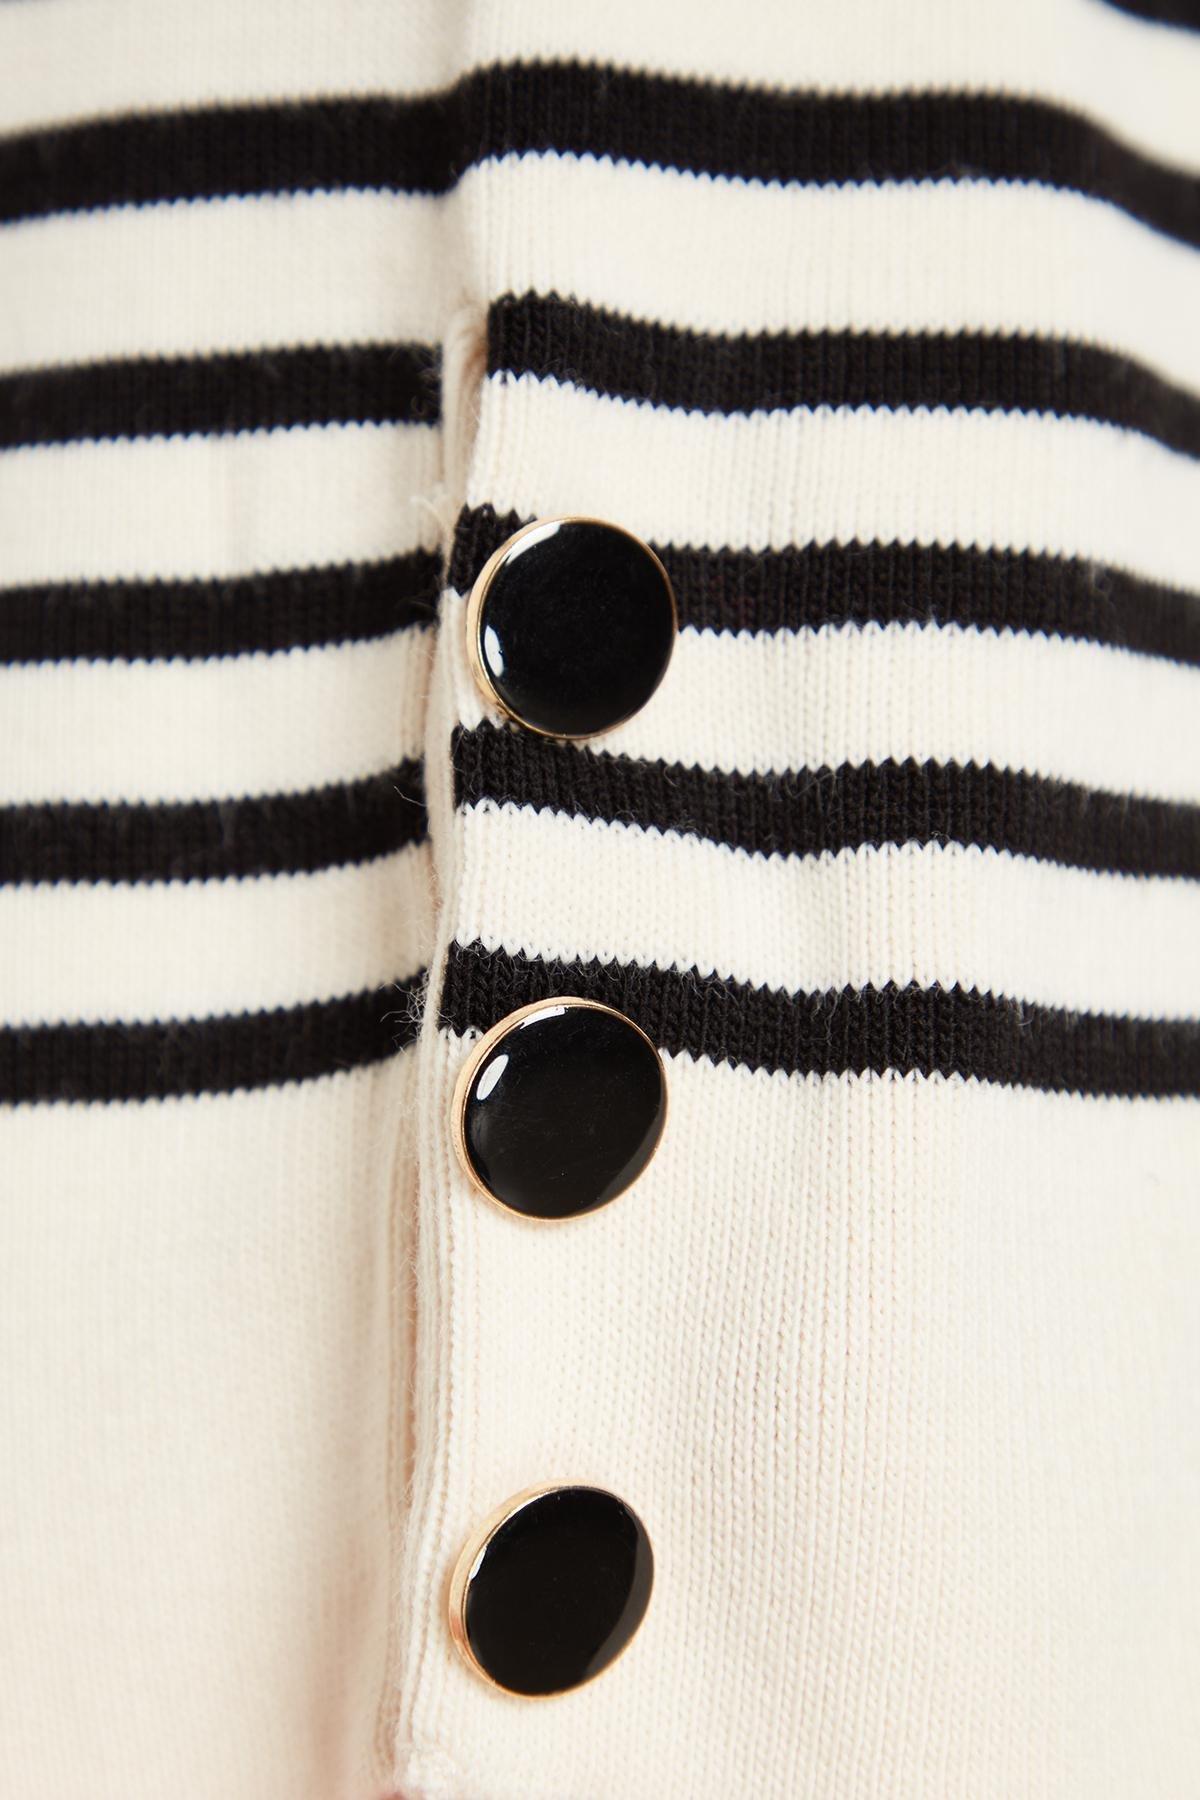 Trendyol - Ecru Striped Knitwear Sweater